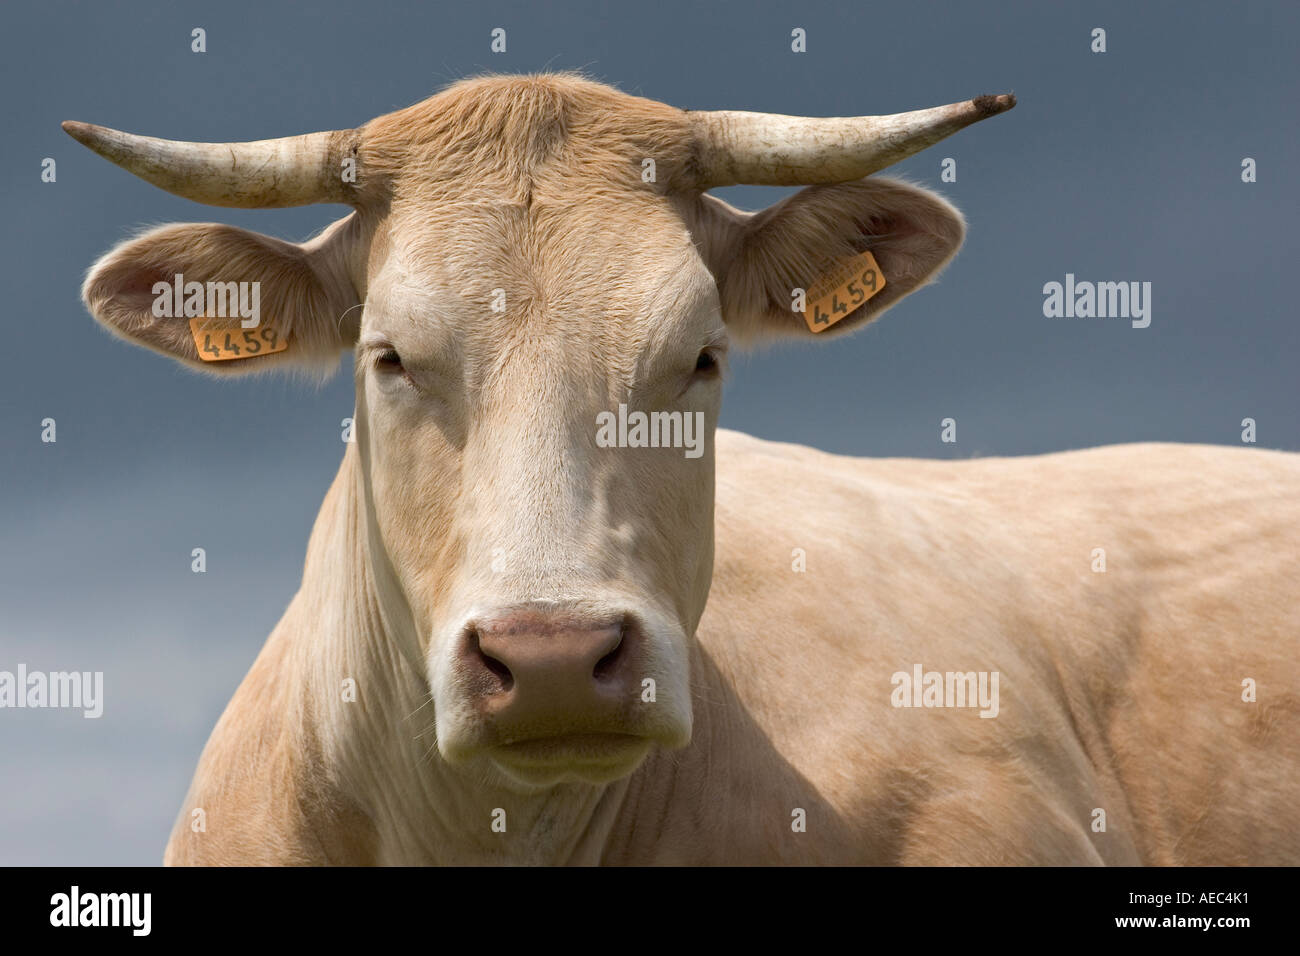 A Charolais Cow Bos Taurus Domesticus In Auvergne France Vache De Race Charolaise En 